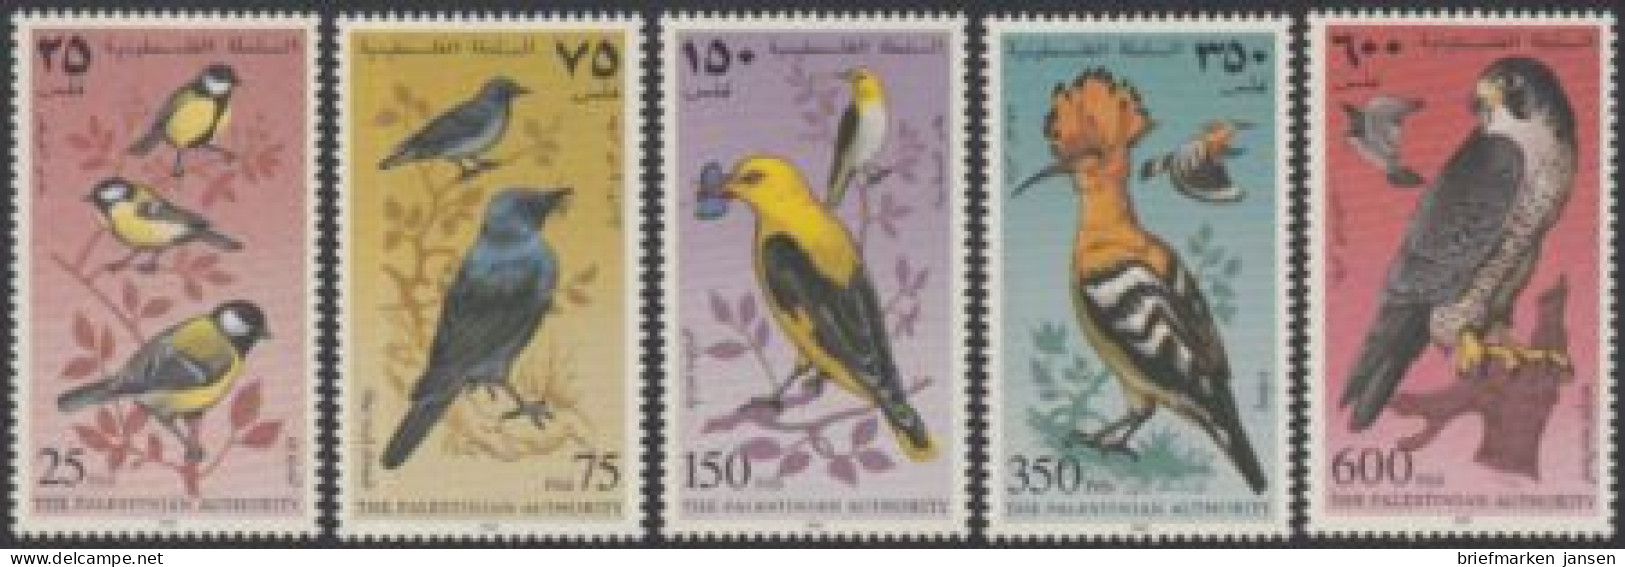 Palästina Mi.Nr. 67-71 Einheim.Vögel,Briefmarkenausstellg. PACIFIC'97 (5 Werte) - Palestine